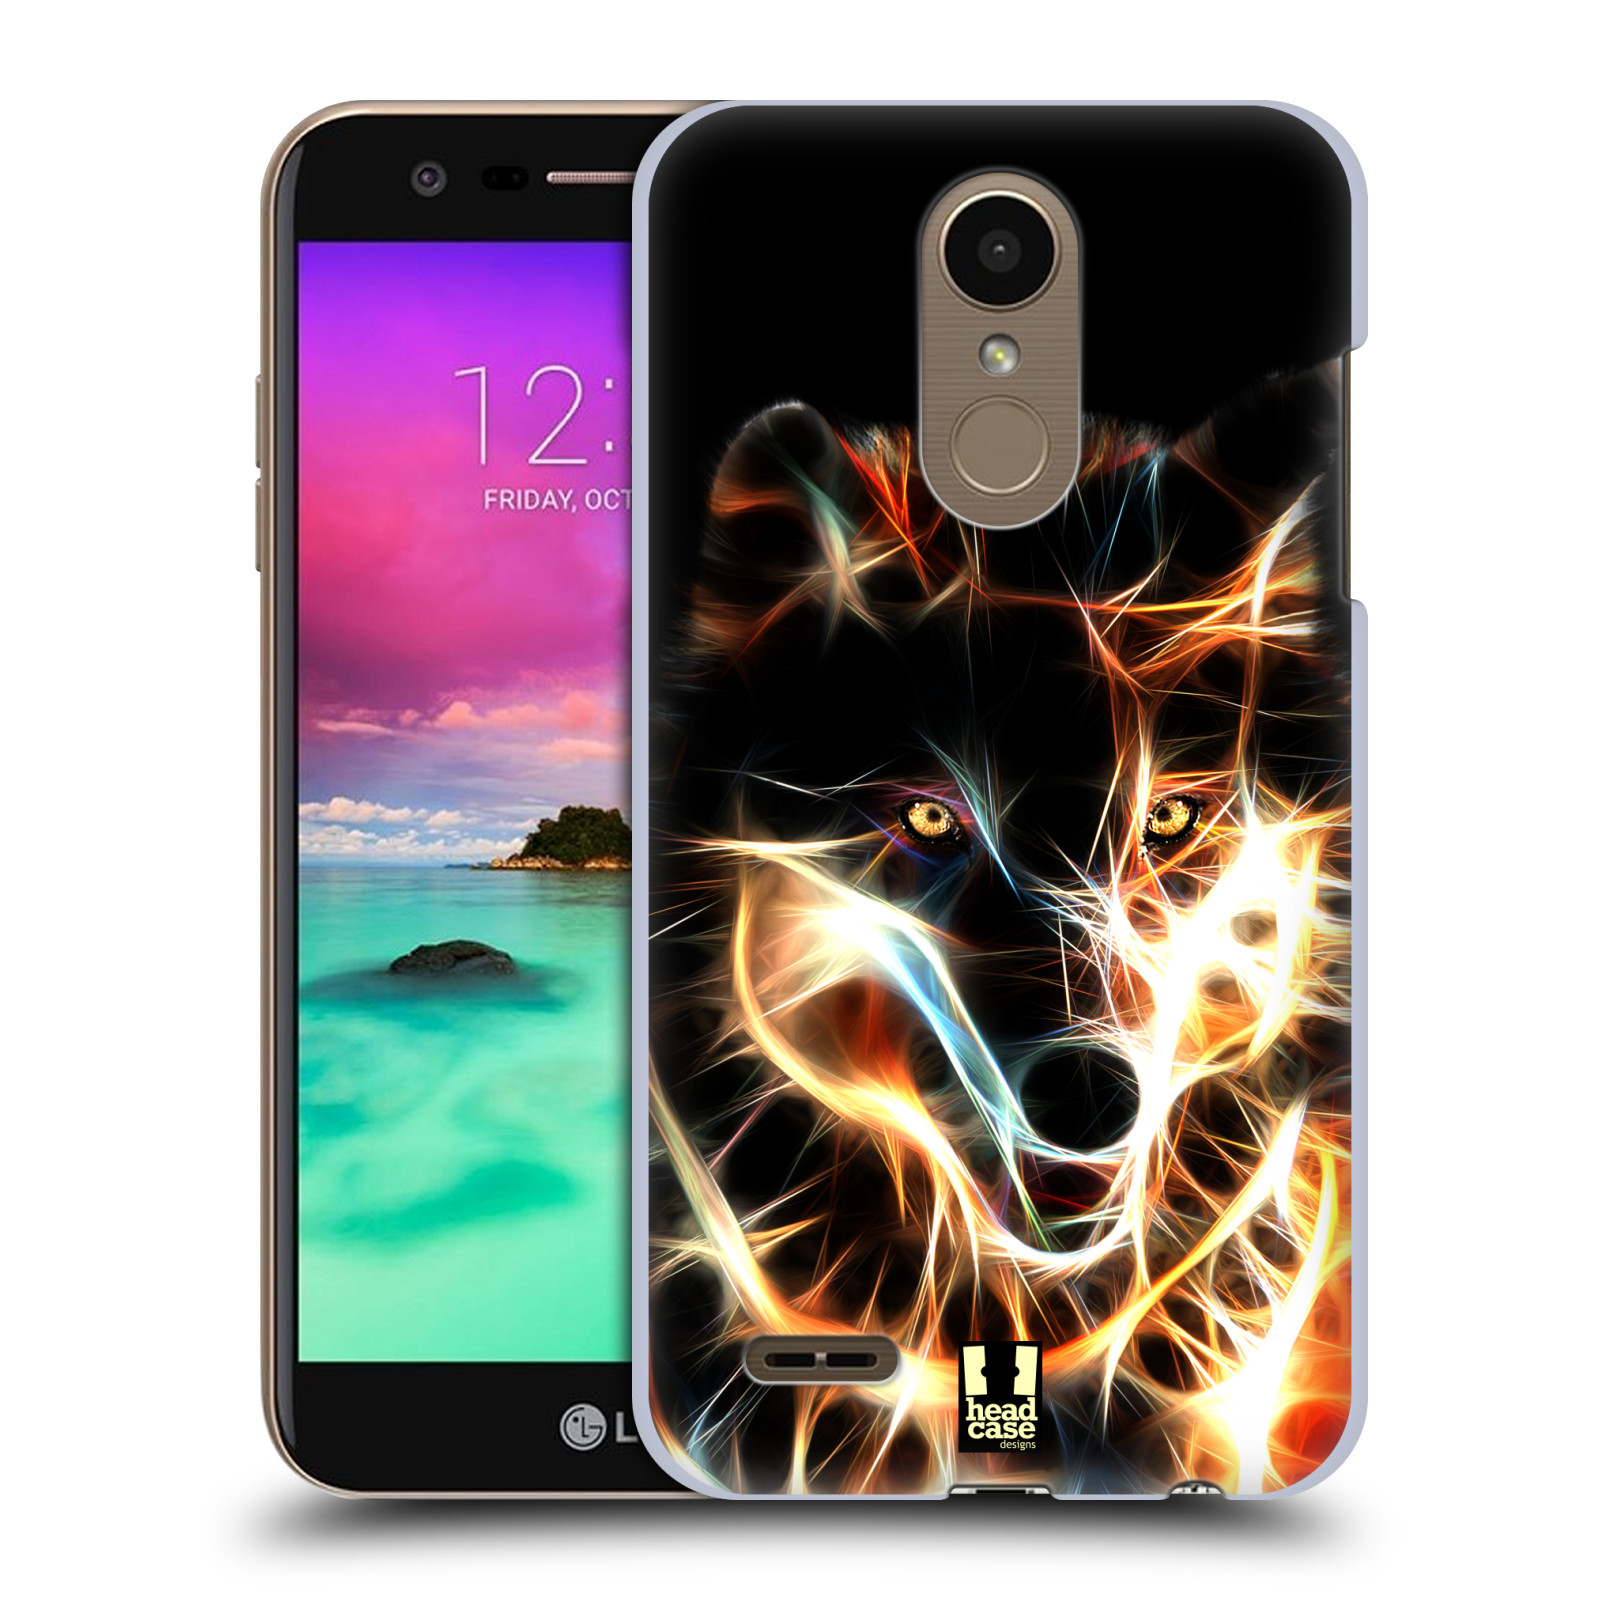 Pouzdro na mobil LG K10 2018 - HEAD CASE - Ohnivý vlk